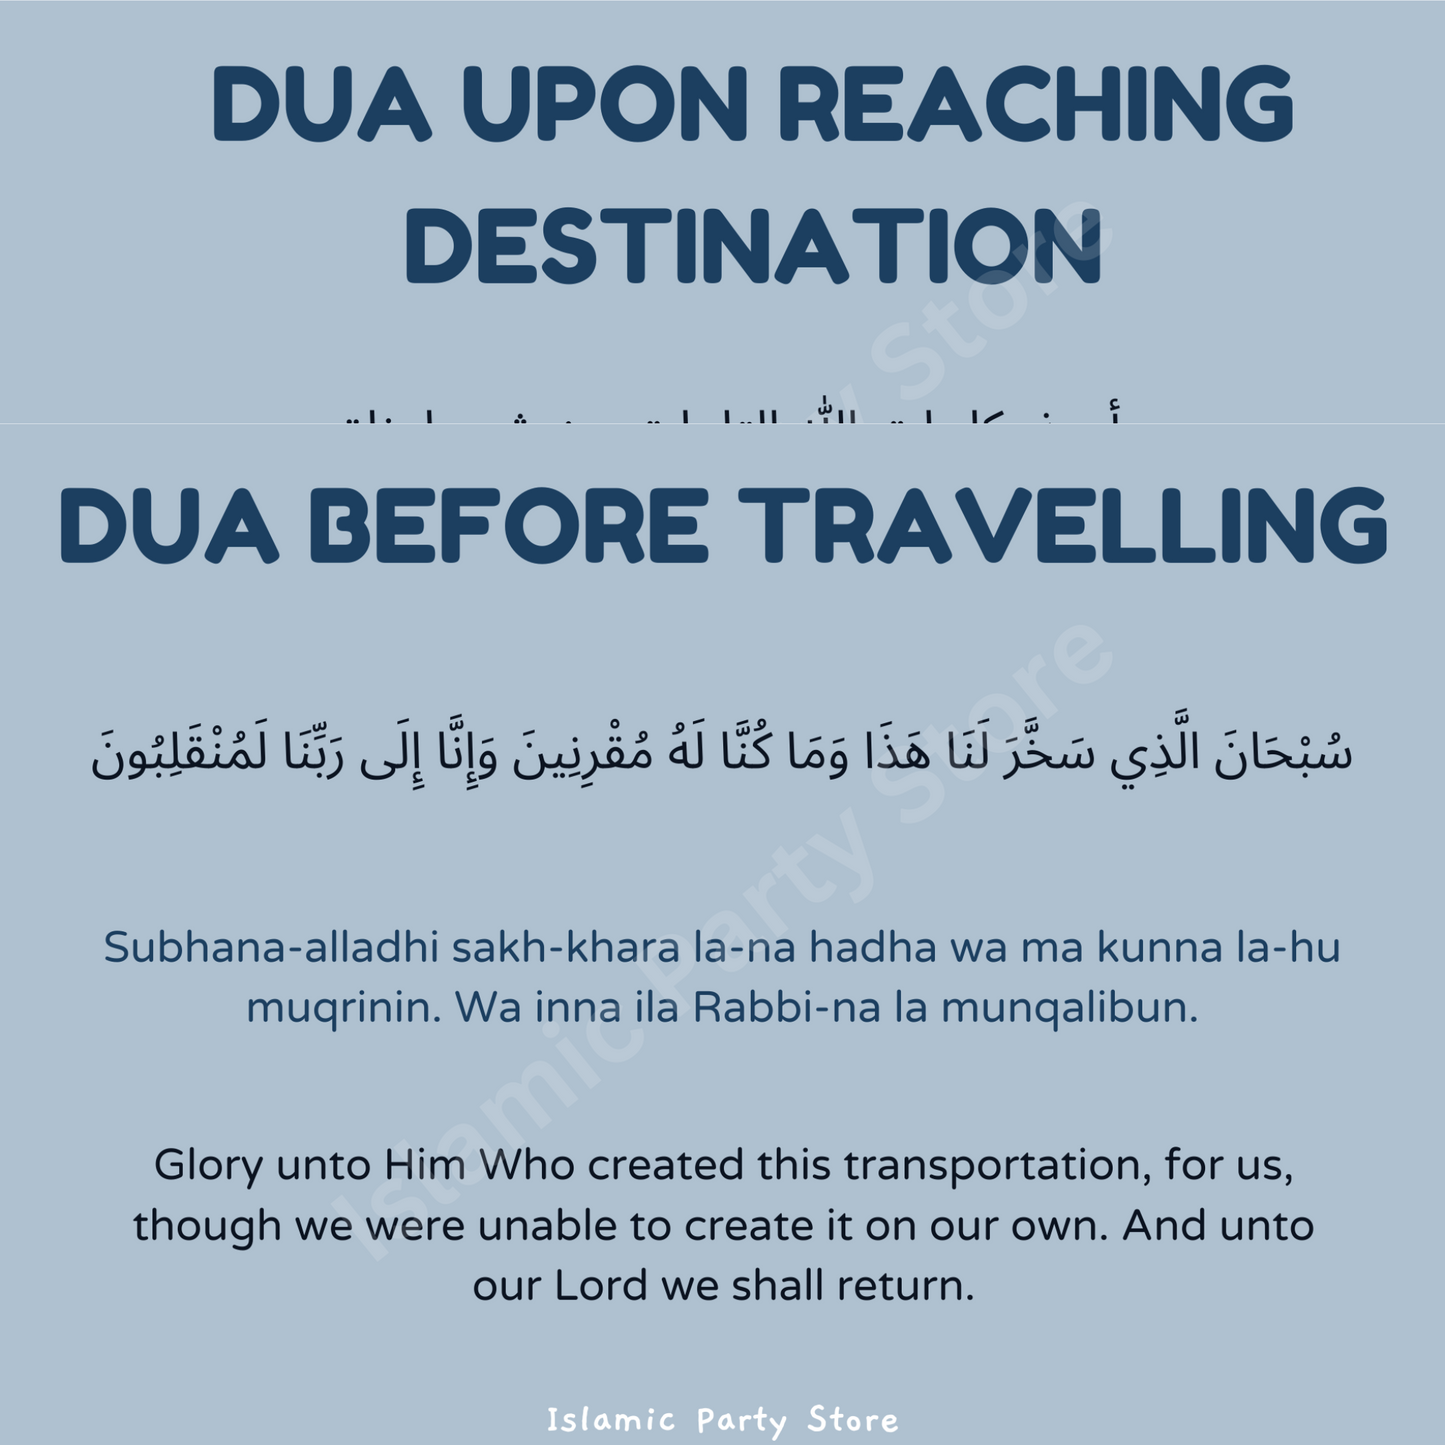 Travelling Dua